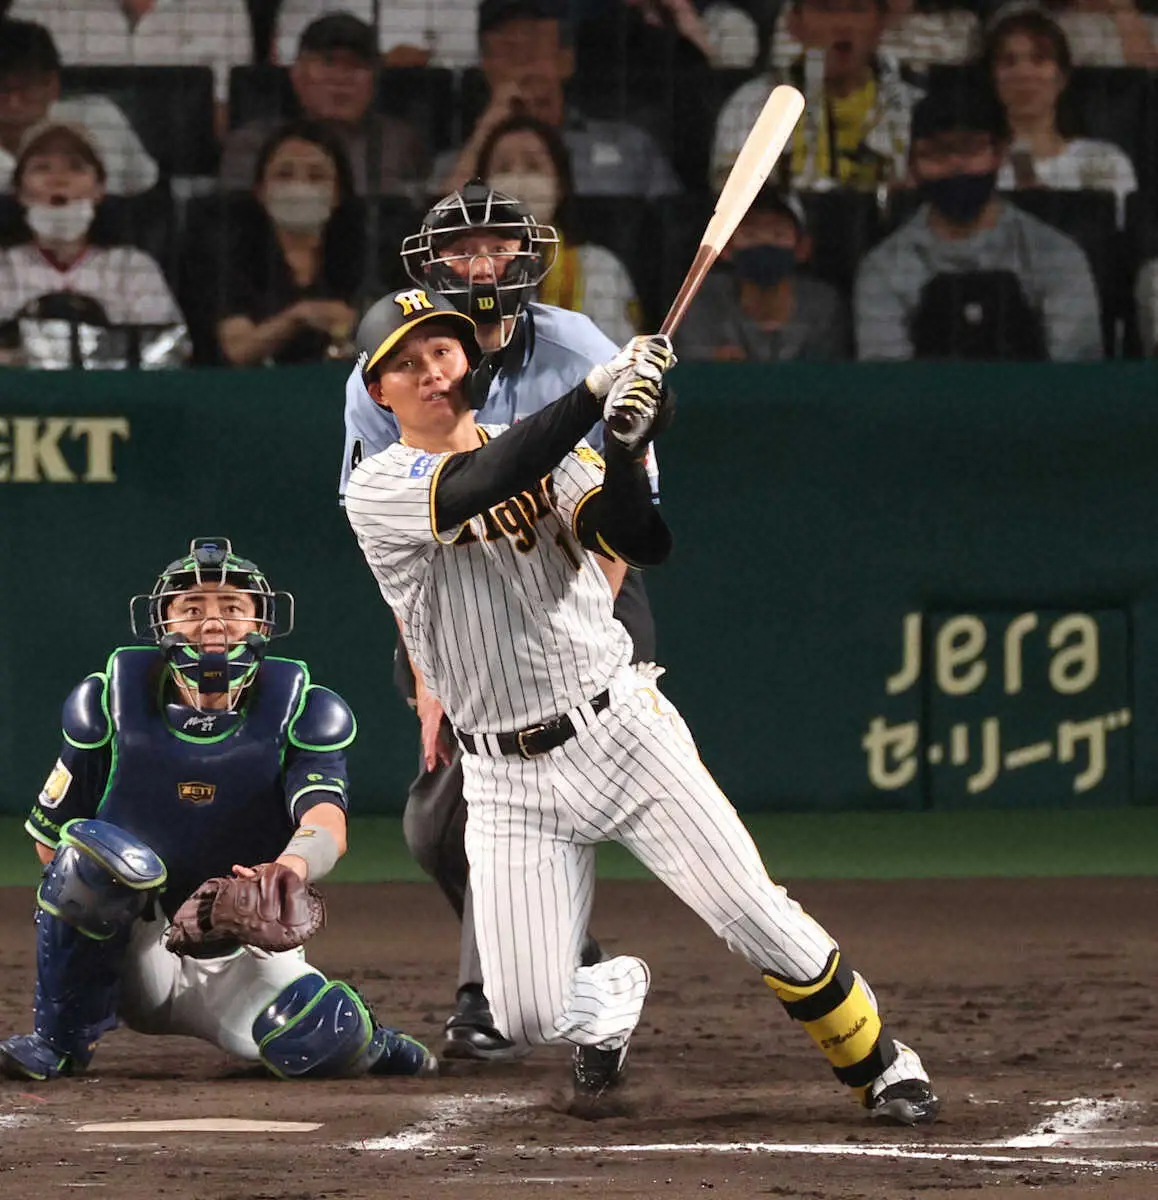 阪神・森下　96打席目でうれしいプロ初本塁打！ヤクルト・木沢から左中間へ弾丸ライナーをズドン